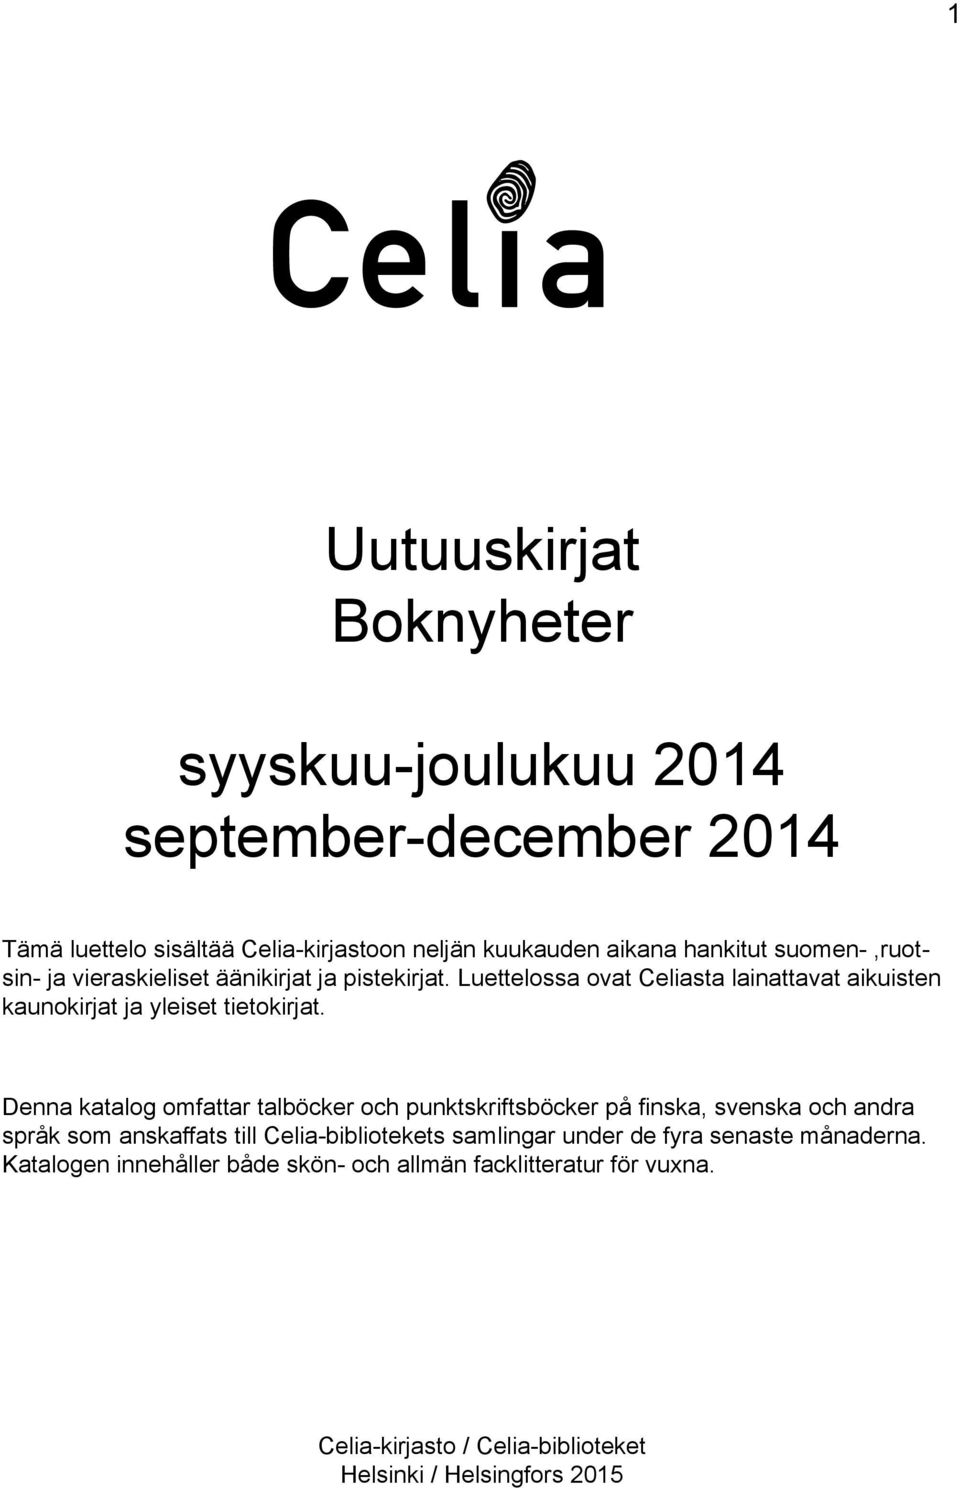 Denna katalog omfattar talböcker och punktskriftsböcker på finska, svenska och andra språk som anskaffats till Celia-bibliotekets samlingar under de